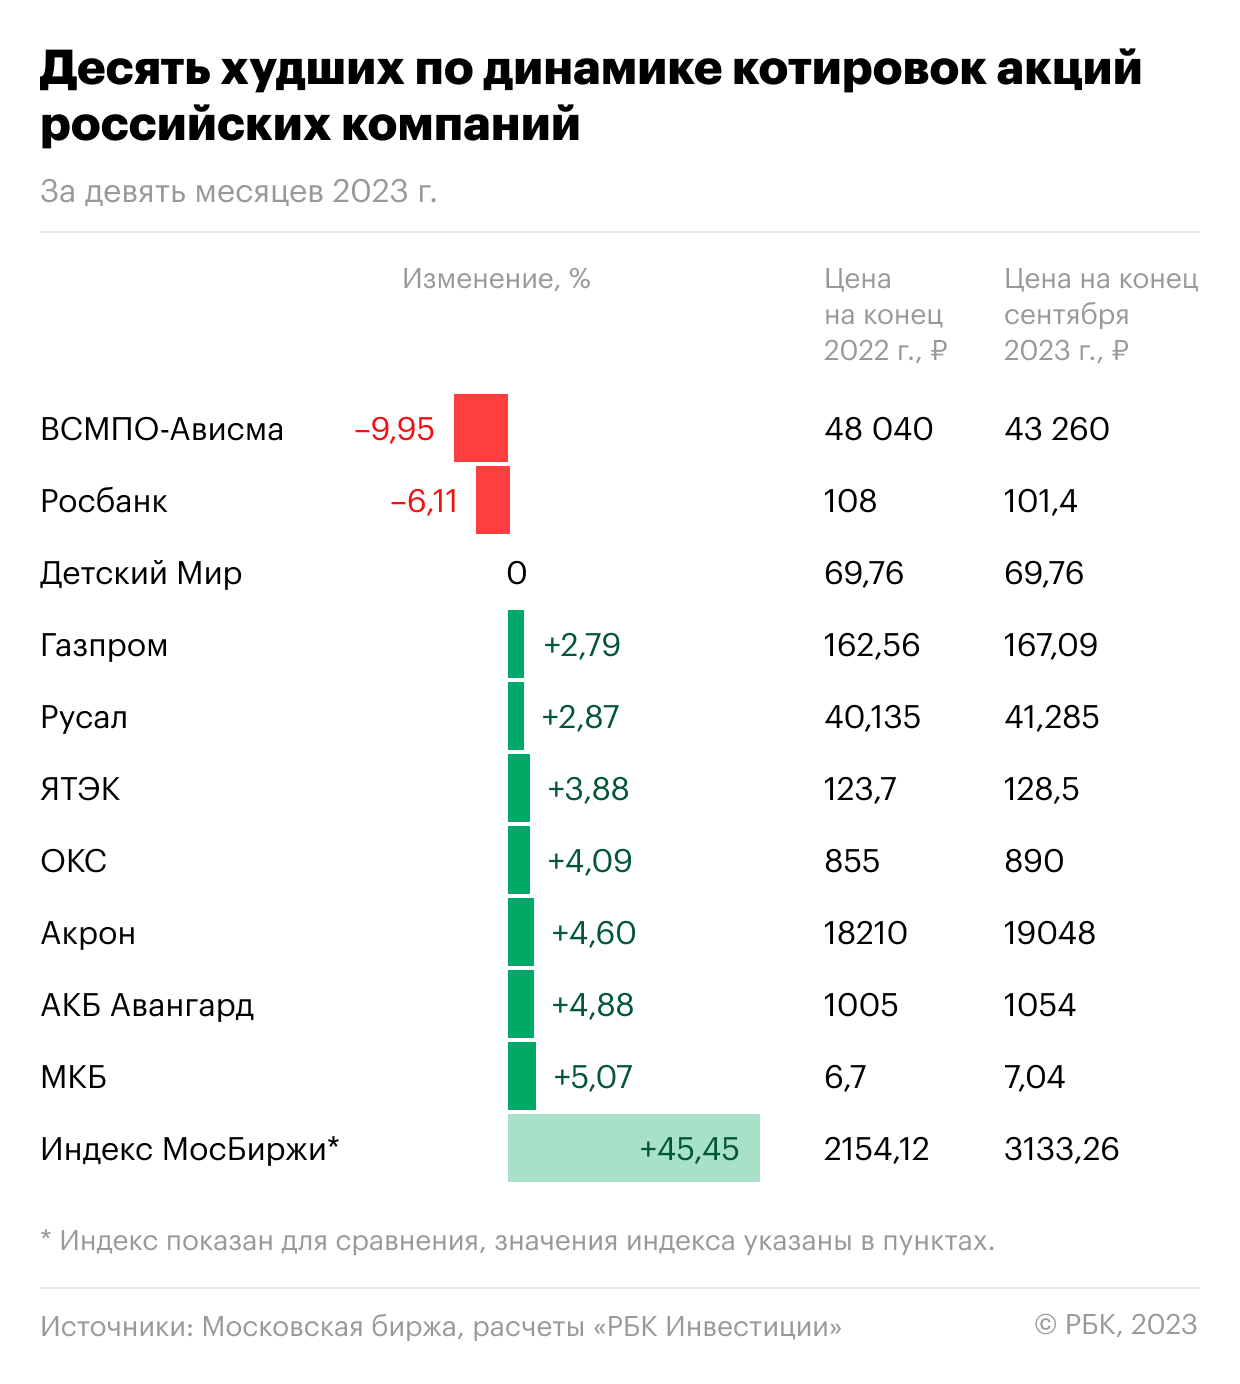 Худшие за девять месяцев 2023 года по динамике  котировок акции российских компаний, торгующиеся на Московской бирже